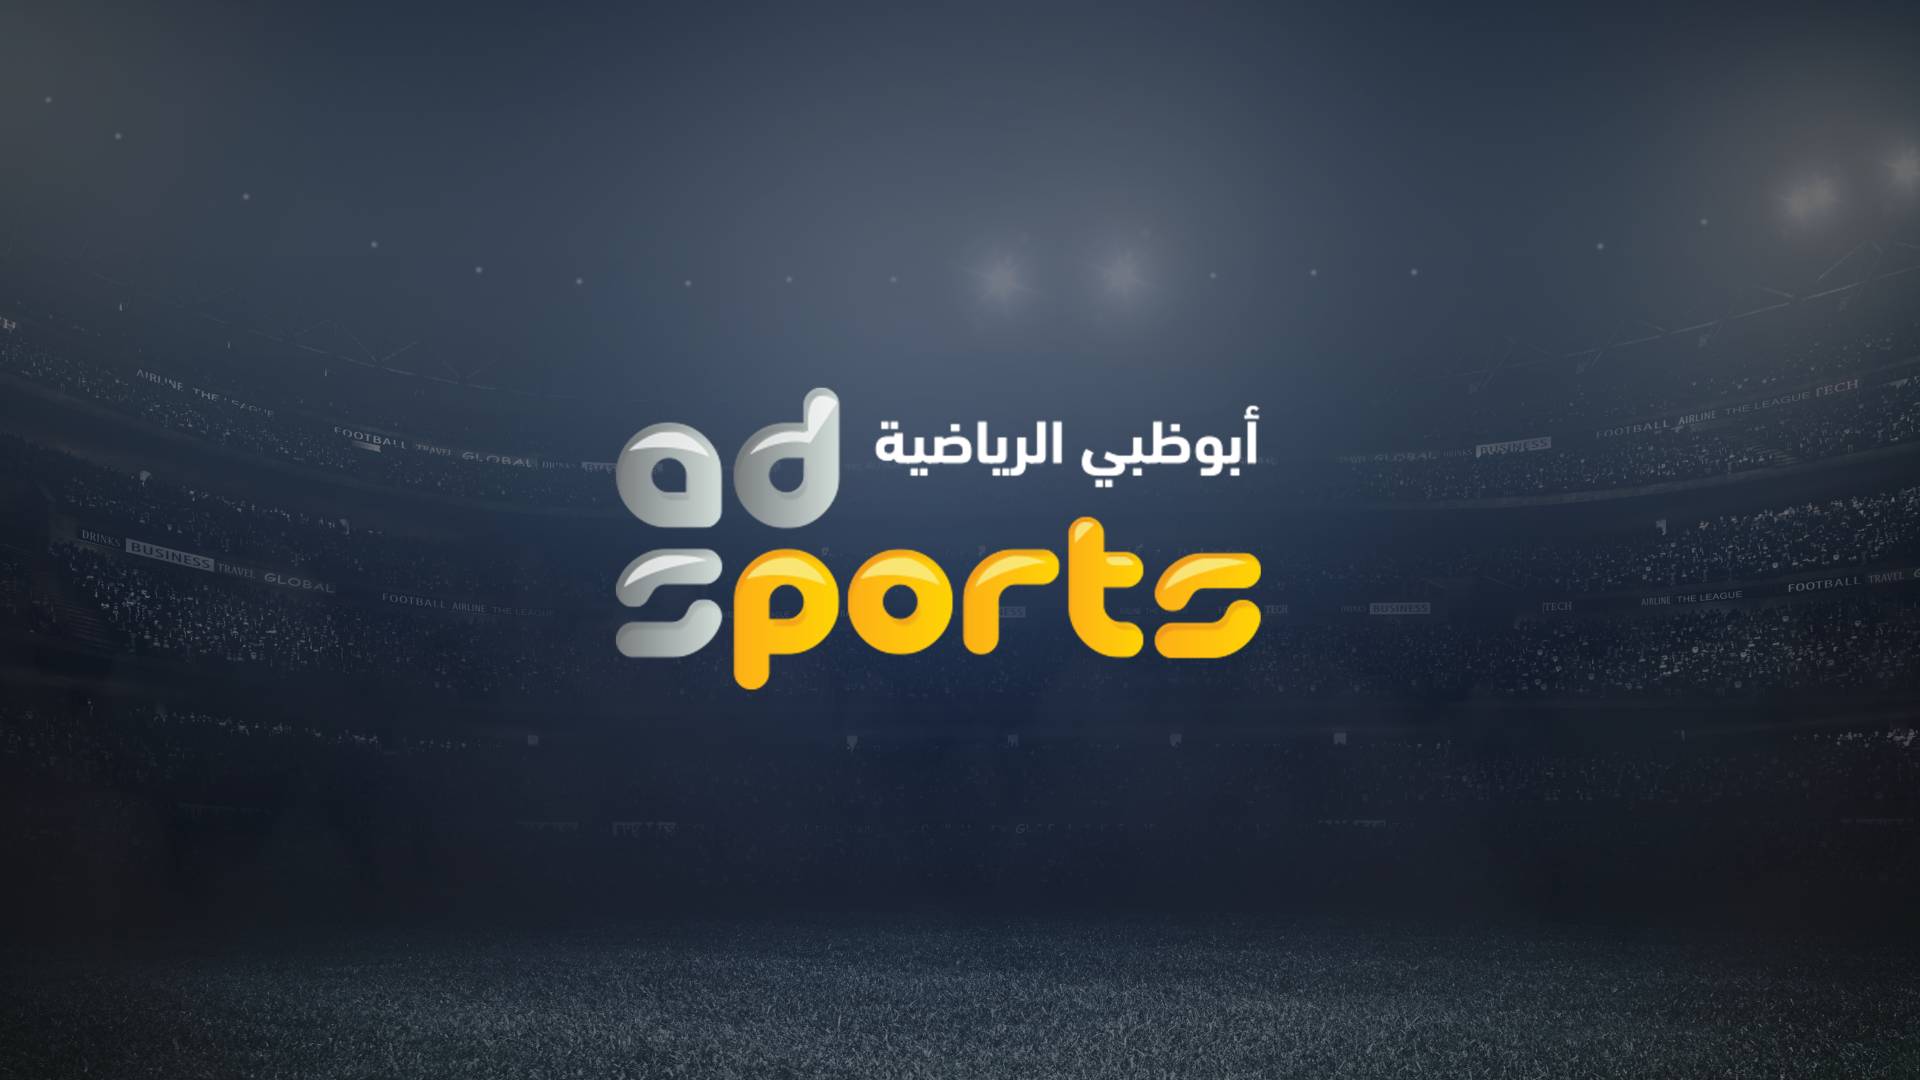 تردد قناة أبو ظبي الرياضية المفتوحة 2020 الناقلة لمباراة القمة بين الأهلي والزمالك